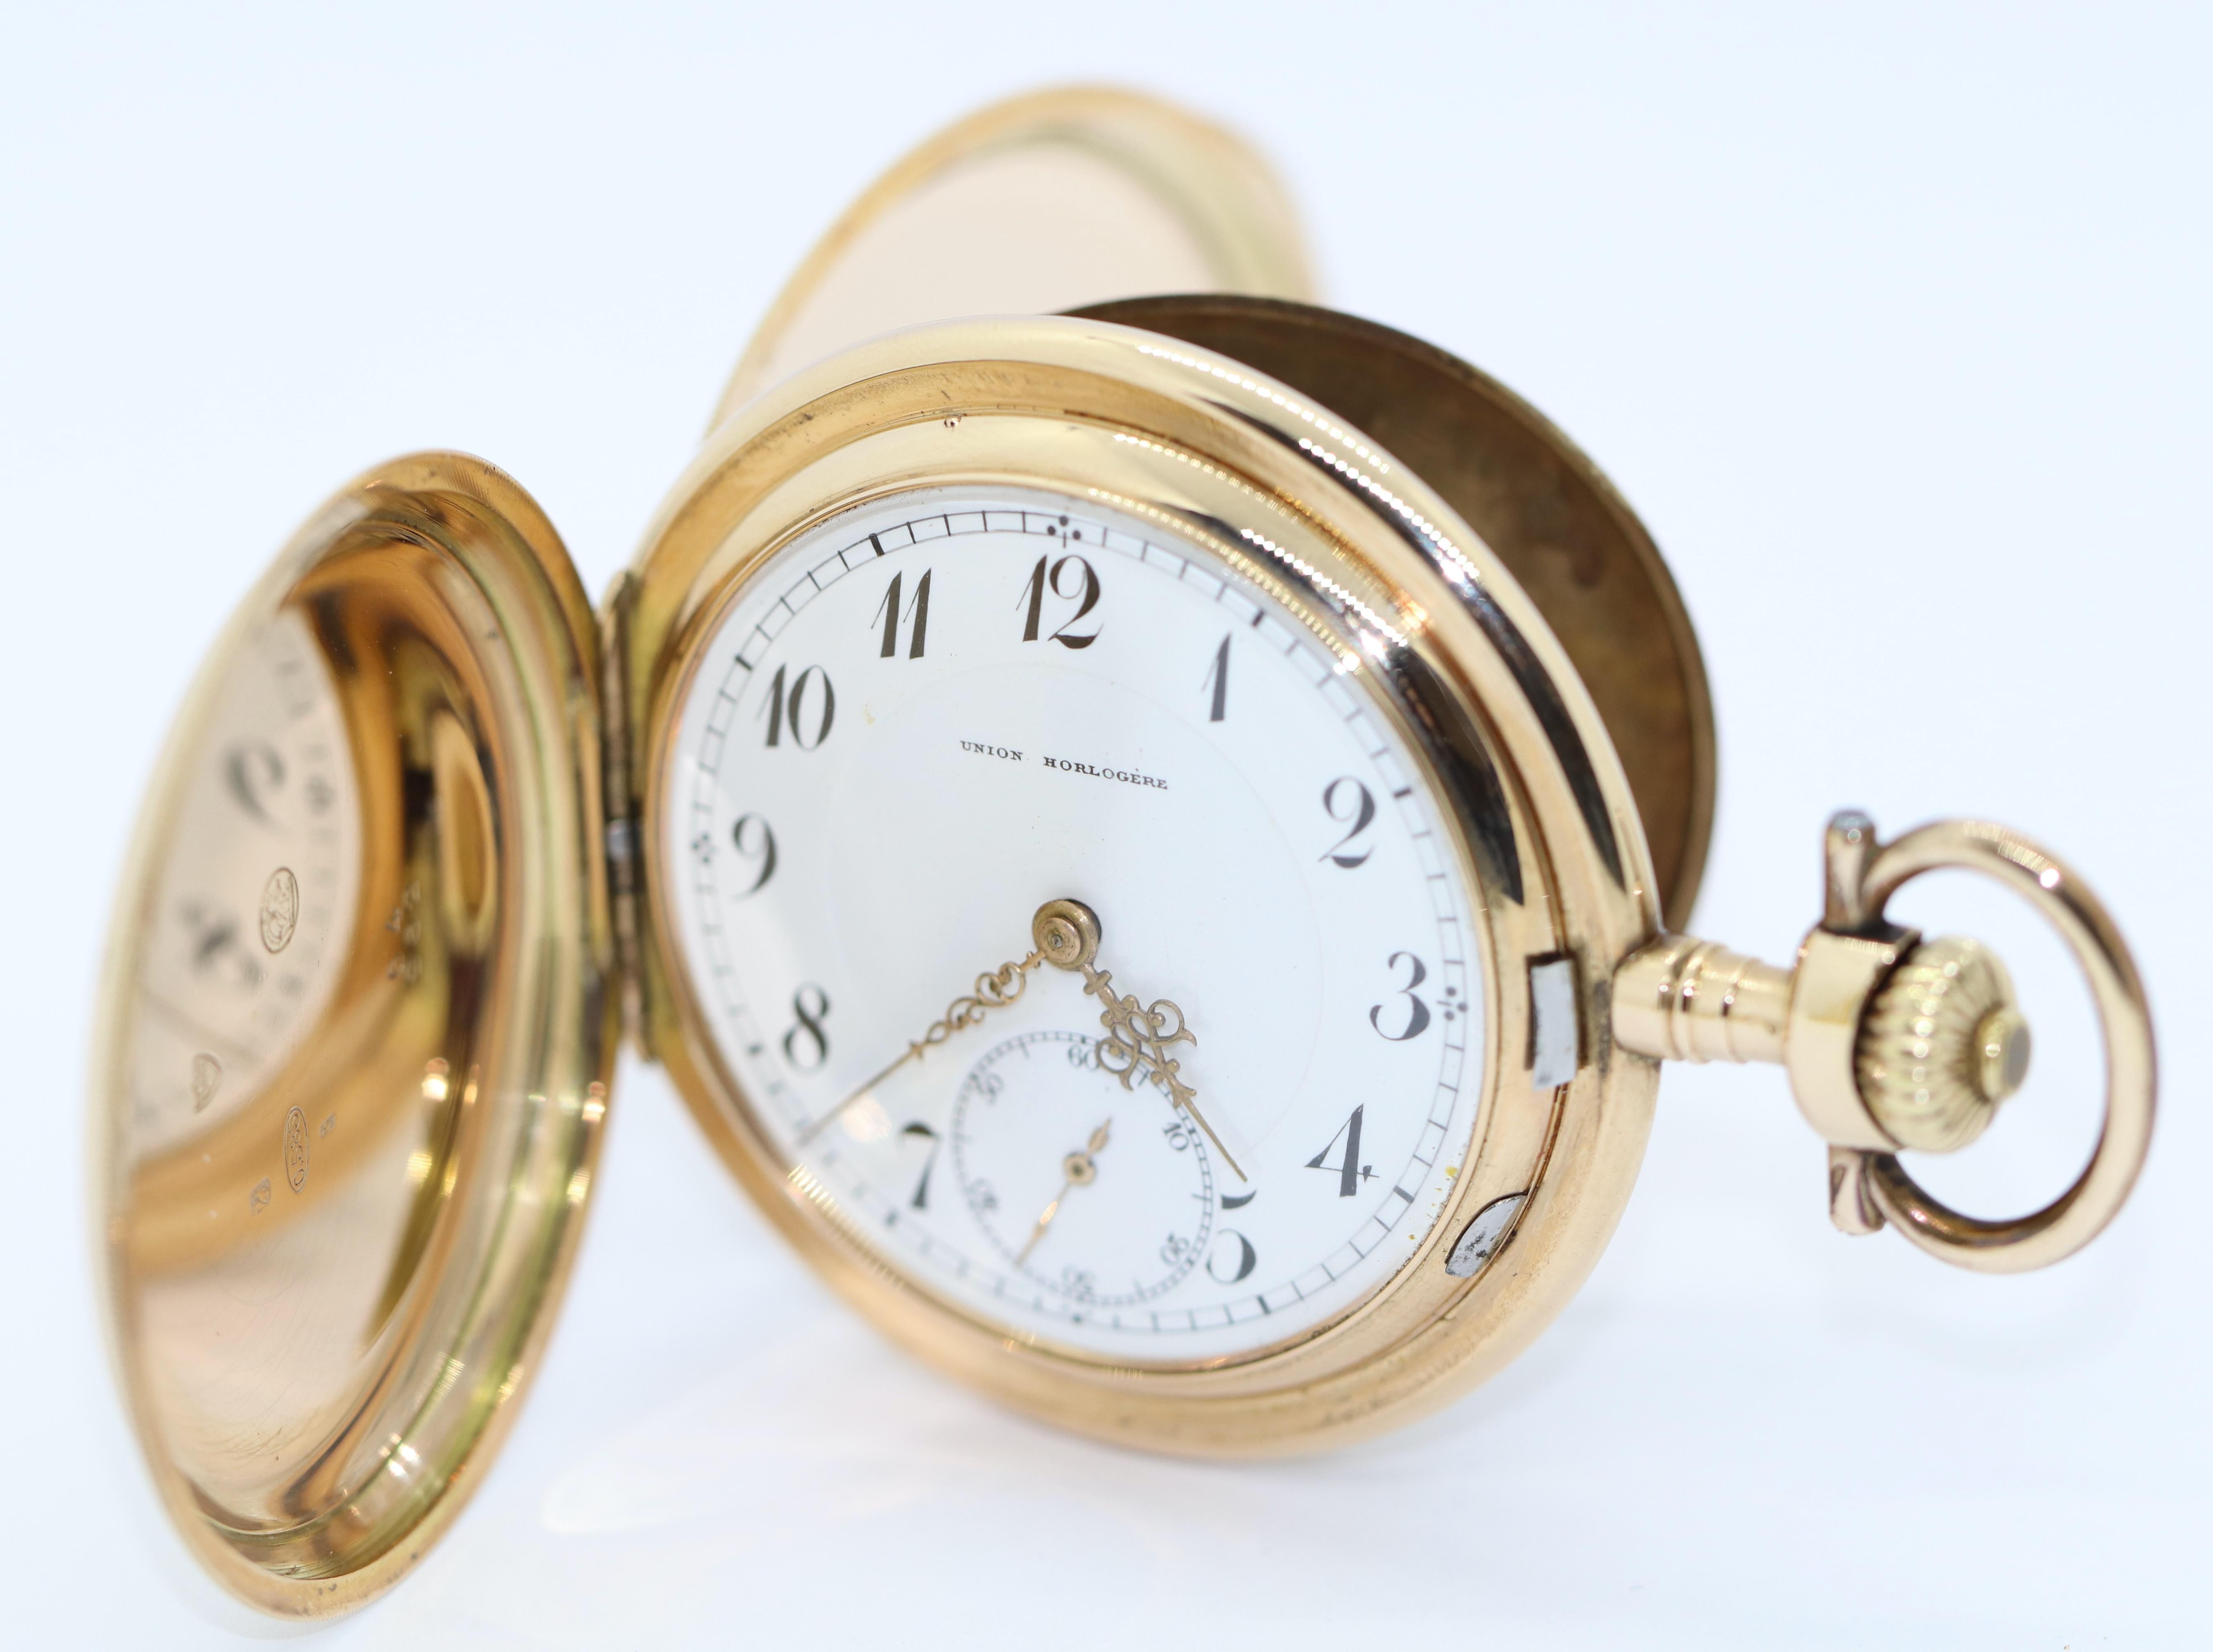 Montre de poche Union Horlogere en or 14 carats.

La montre de poche peut être remontée et fonctionne.

Certificat d'authenticité inclus.